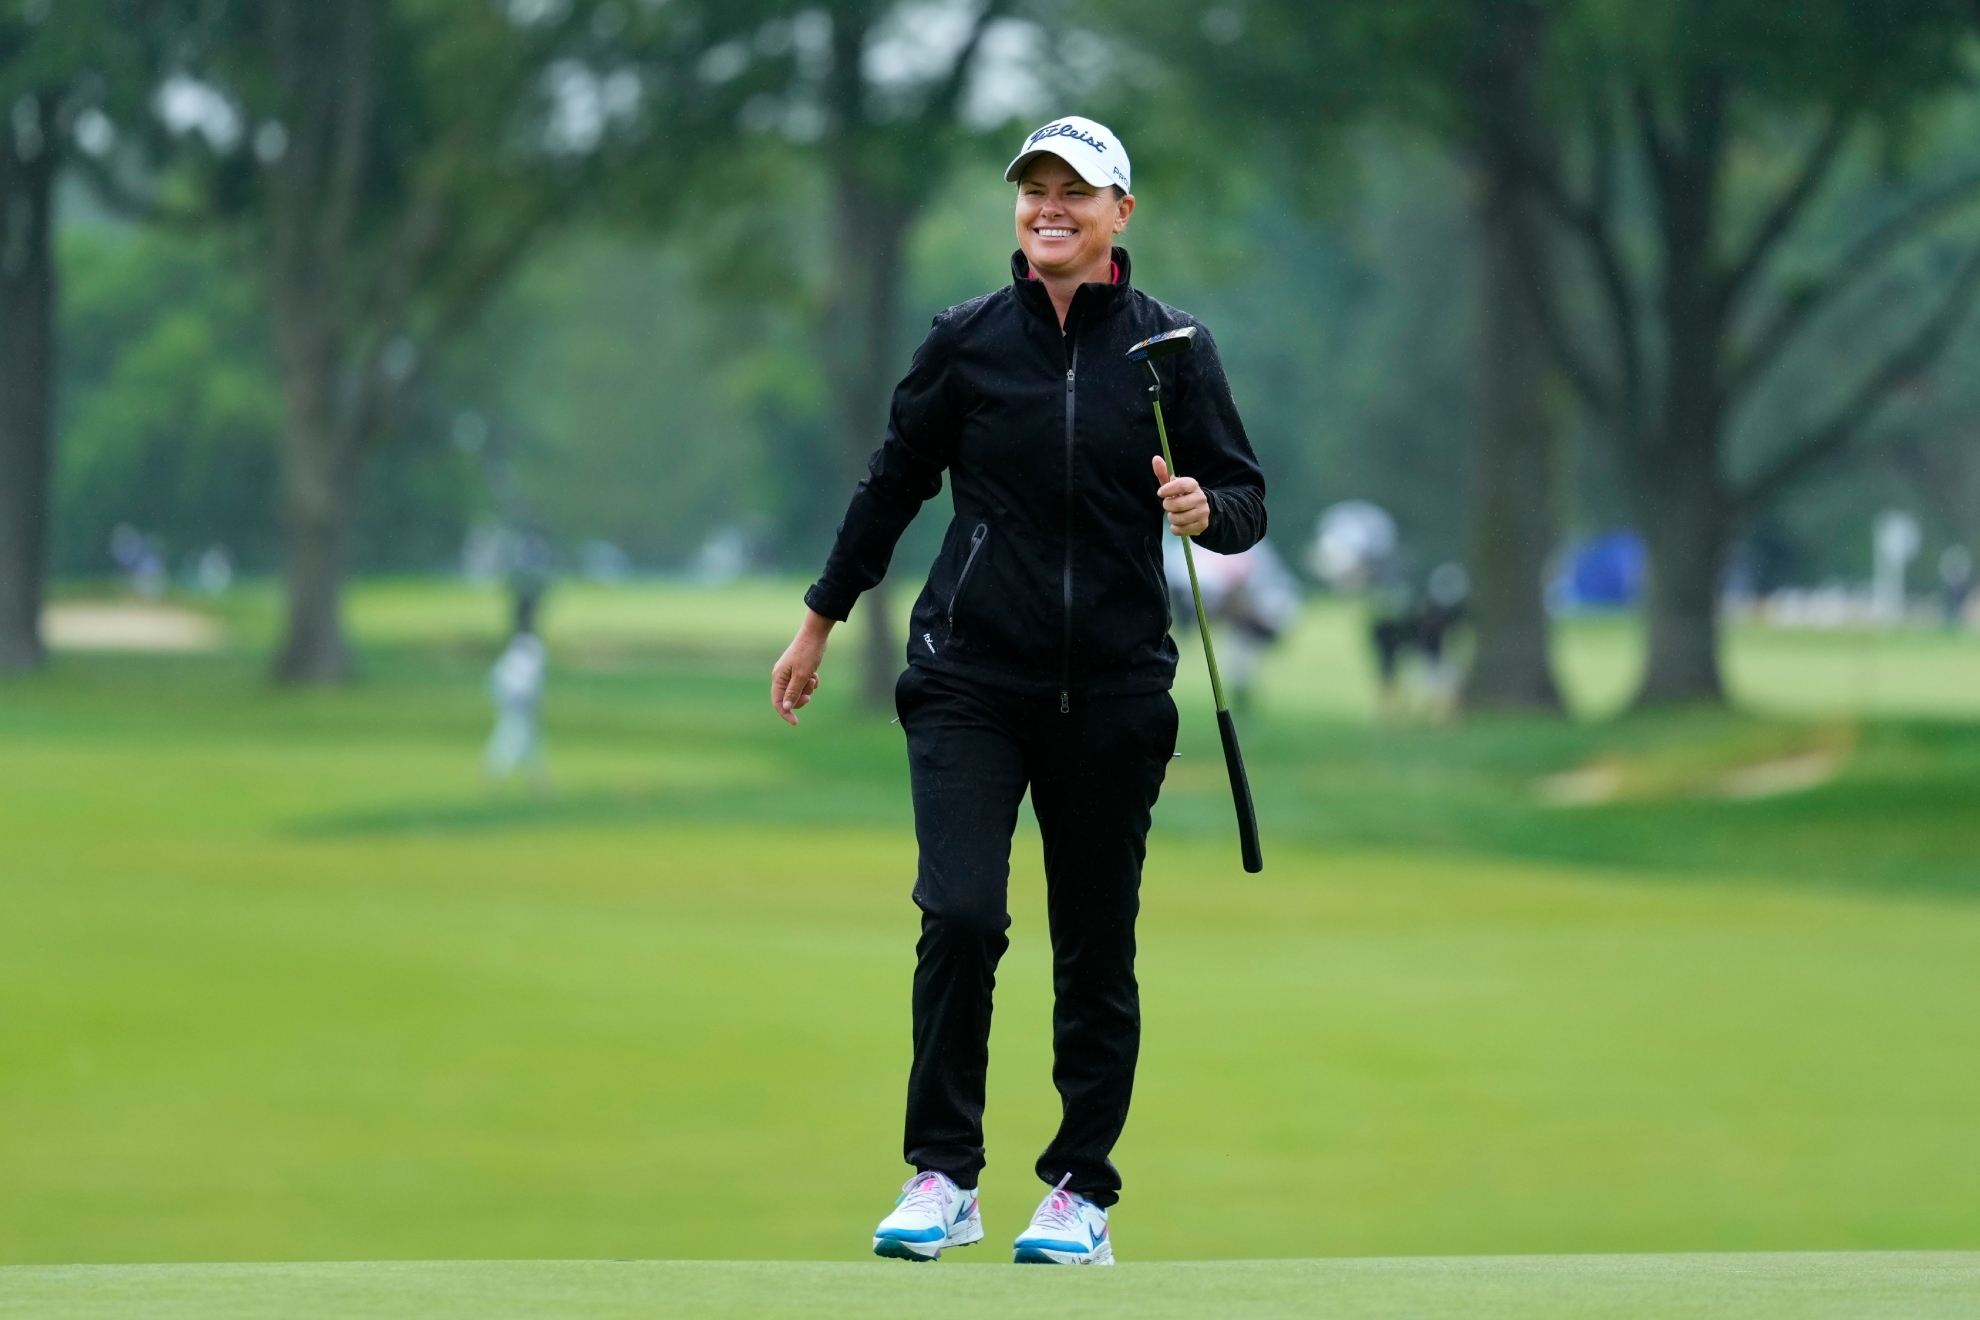 Lee-Anne Pace lidera el Campeonato de la PGA con Carlota Ciganda a seis golpes